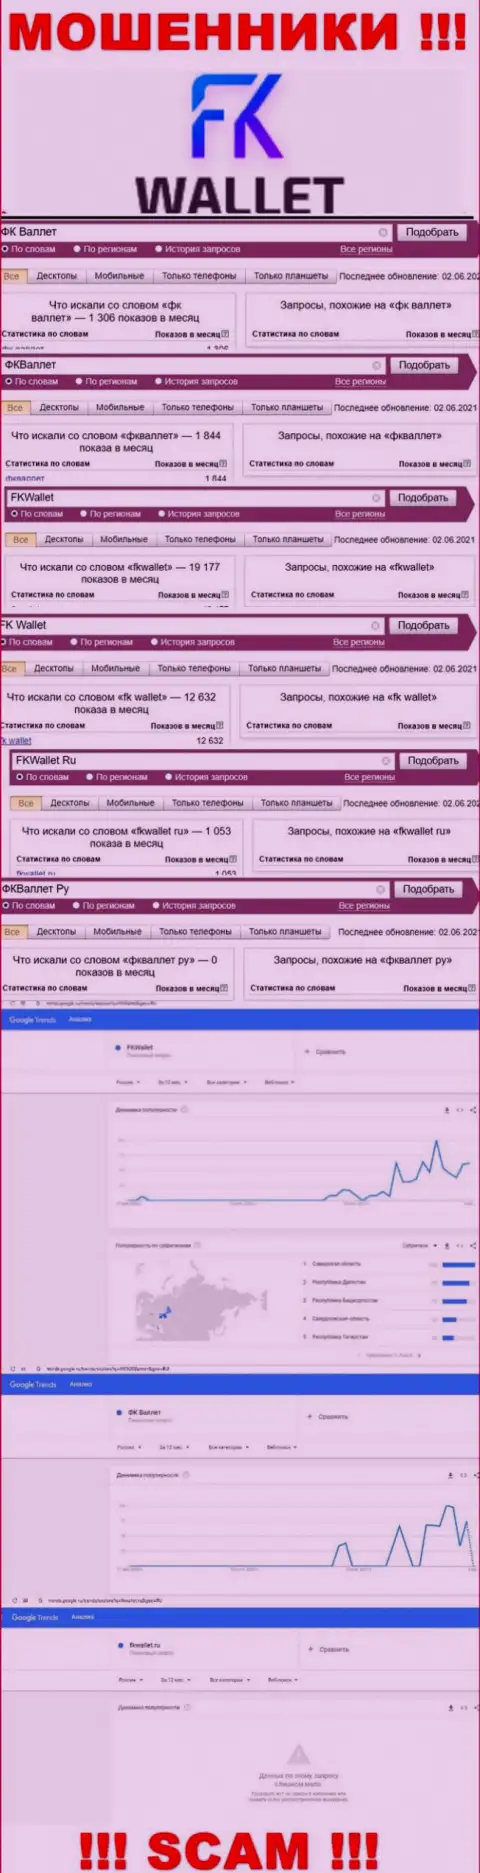 Скриншот итога online запросов по противозаконно действующей конторе FKWallet Ru